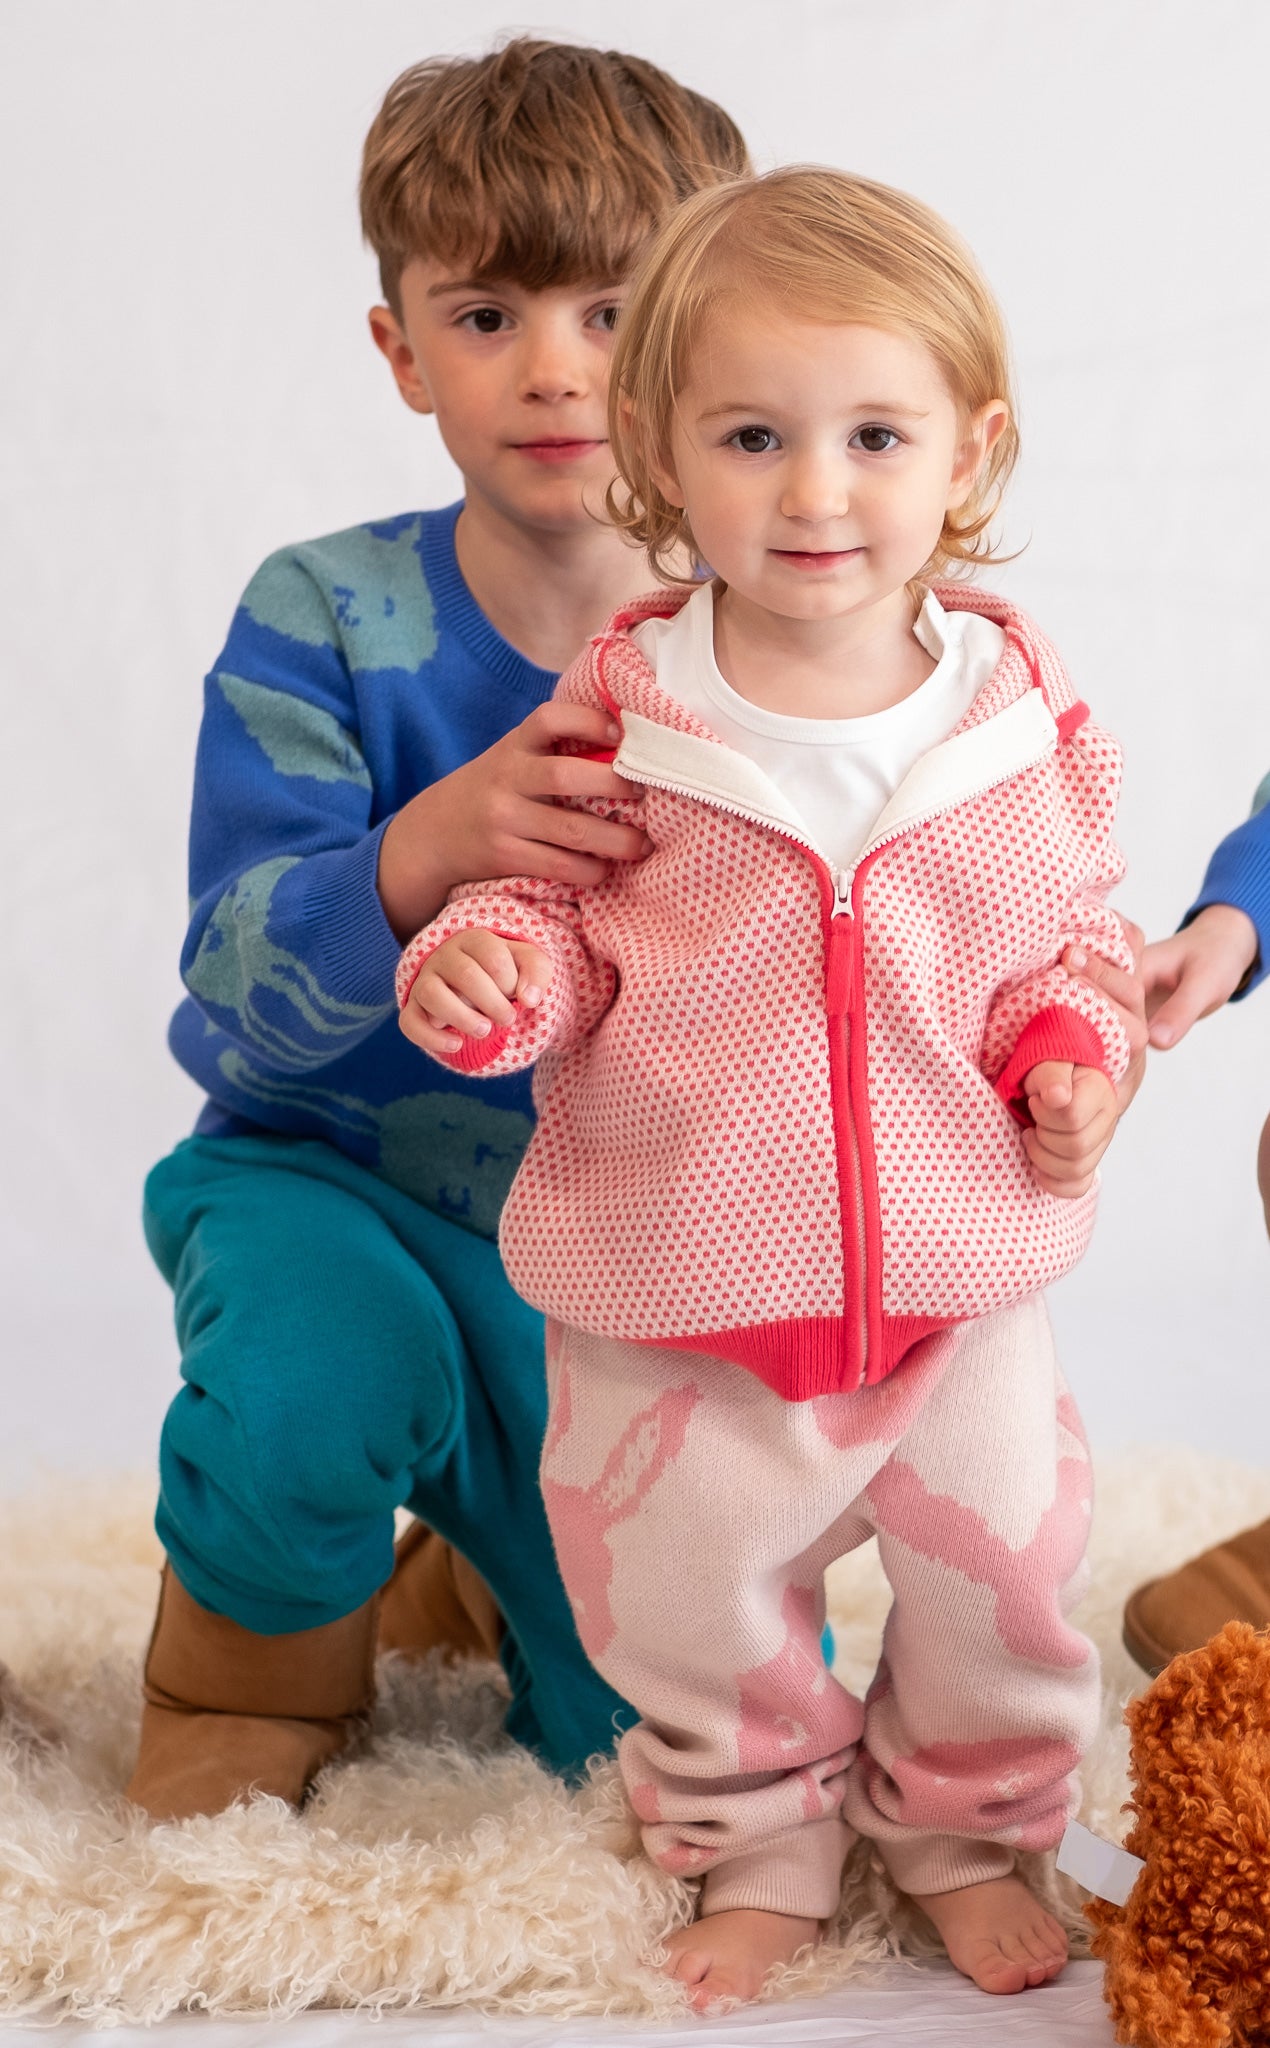 嬰兒服裝 - 嬰童彩虹系列假耳朵拉鍊長袖外套